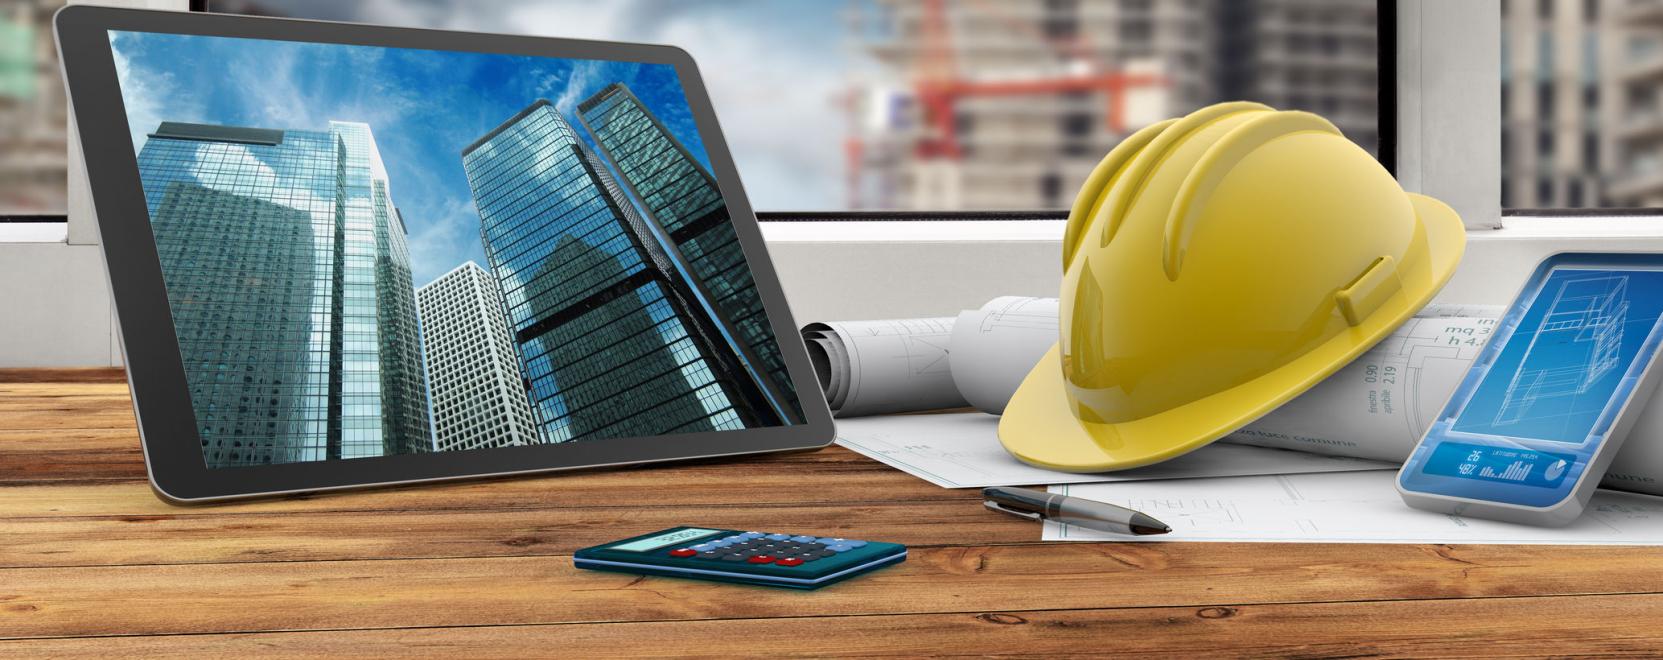 Építőipar 4.0: számítógépes látás a munkavédelmi sisakon